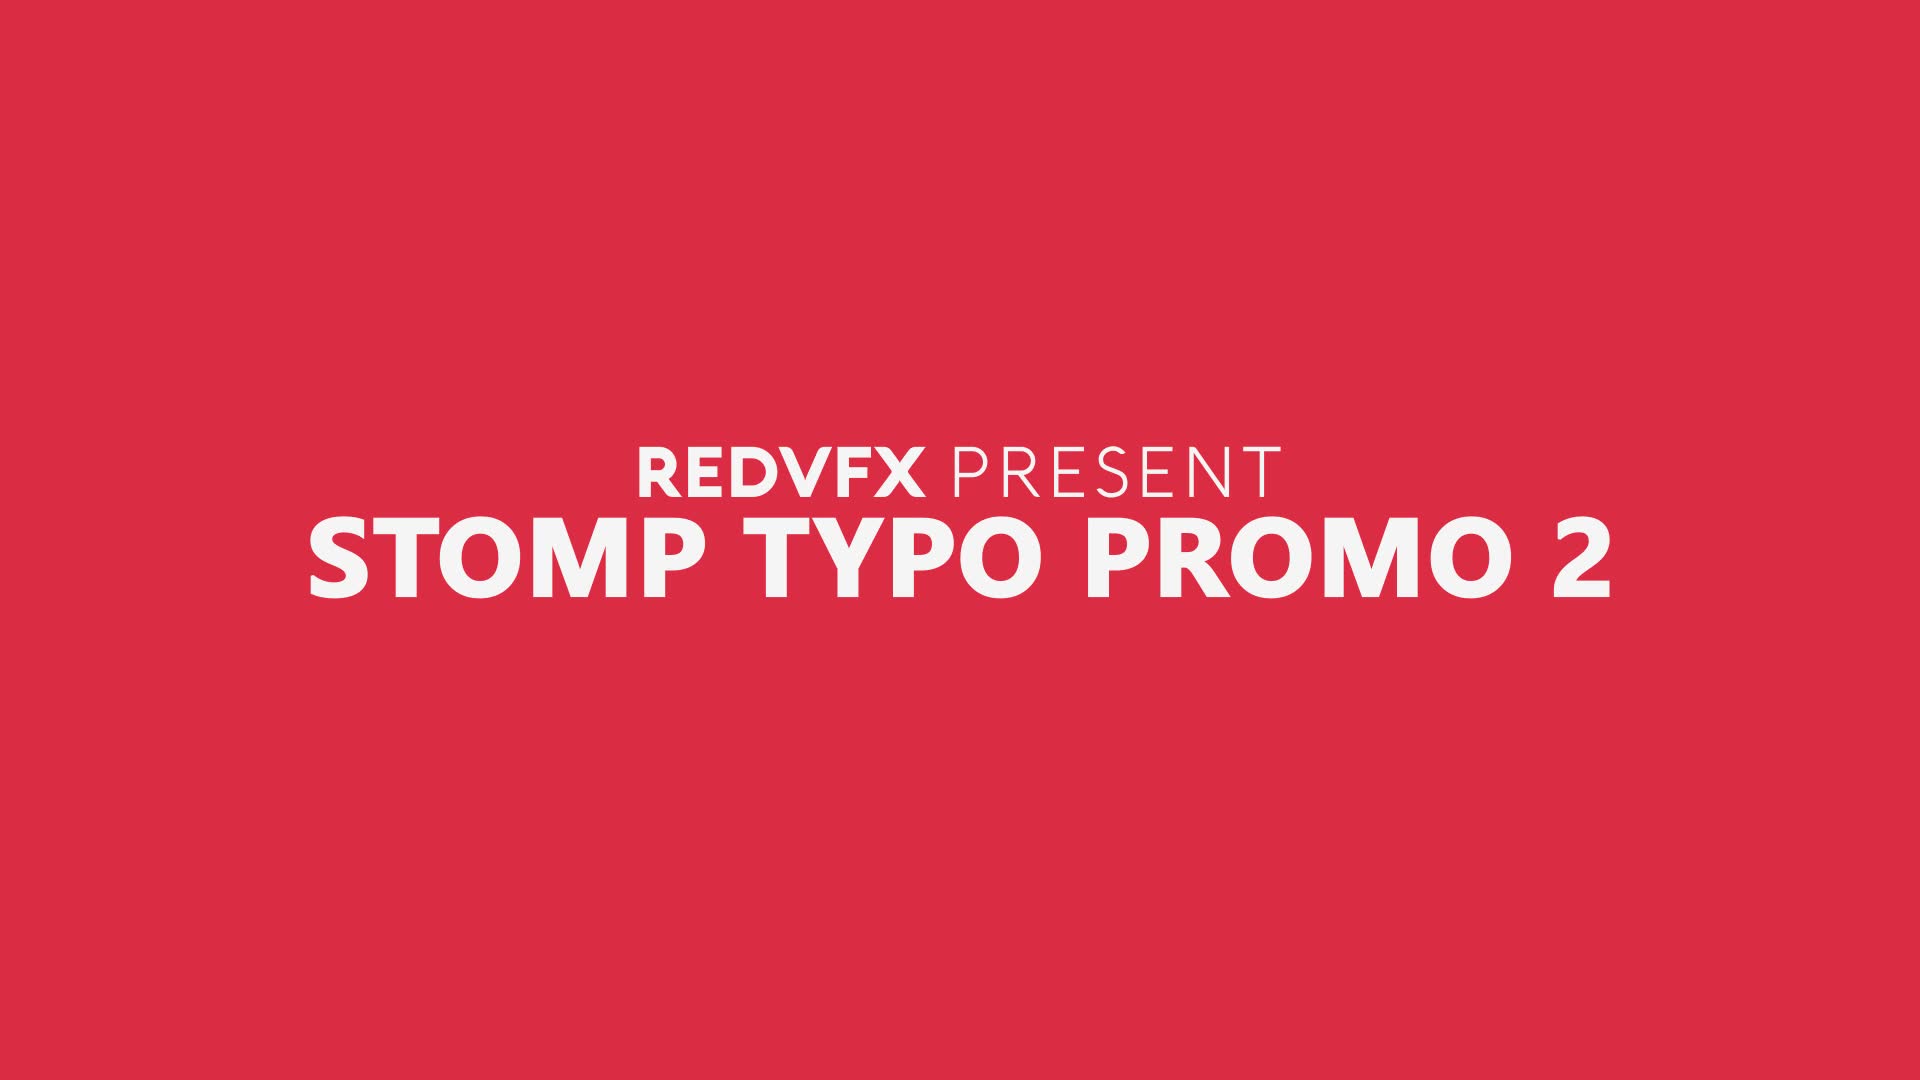 Stomp Typo Promo 2 for Premiere Pro Videohive 36928000 Premiere Pro Image 2